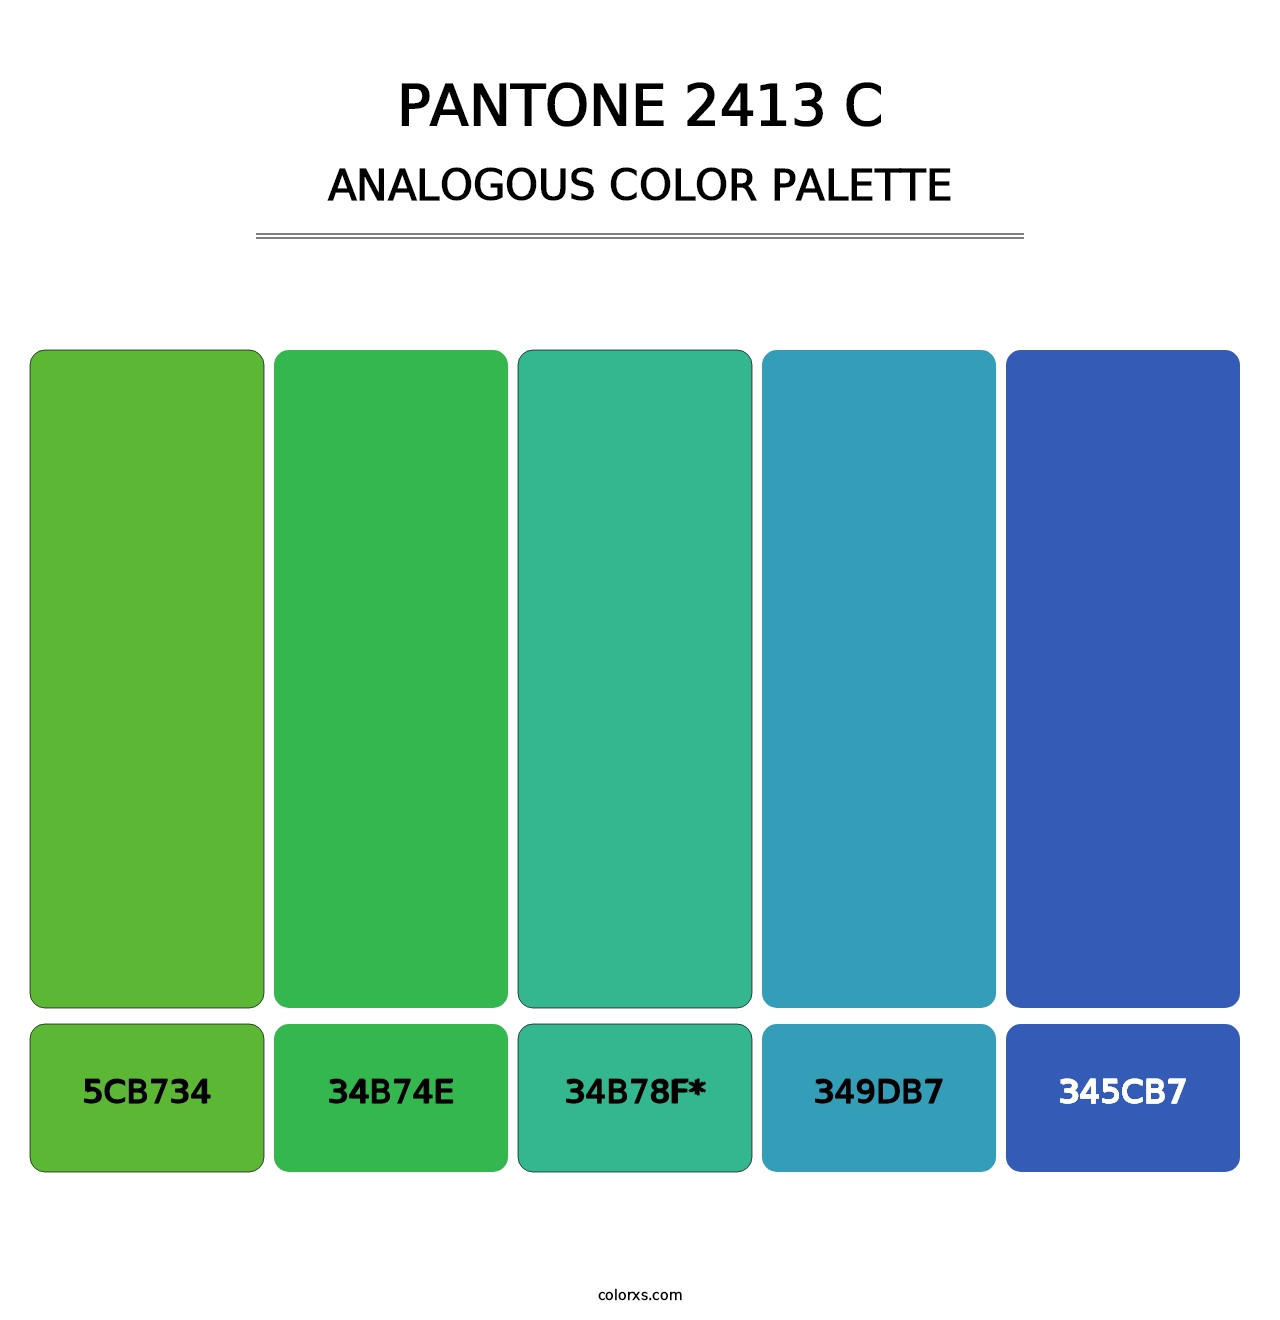 PANTONE 2413 C - Analogous Color Palette